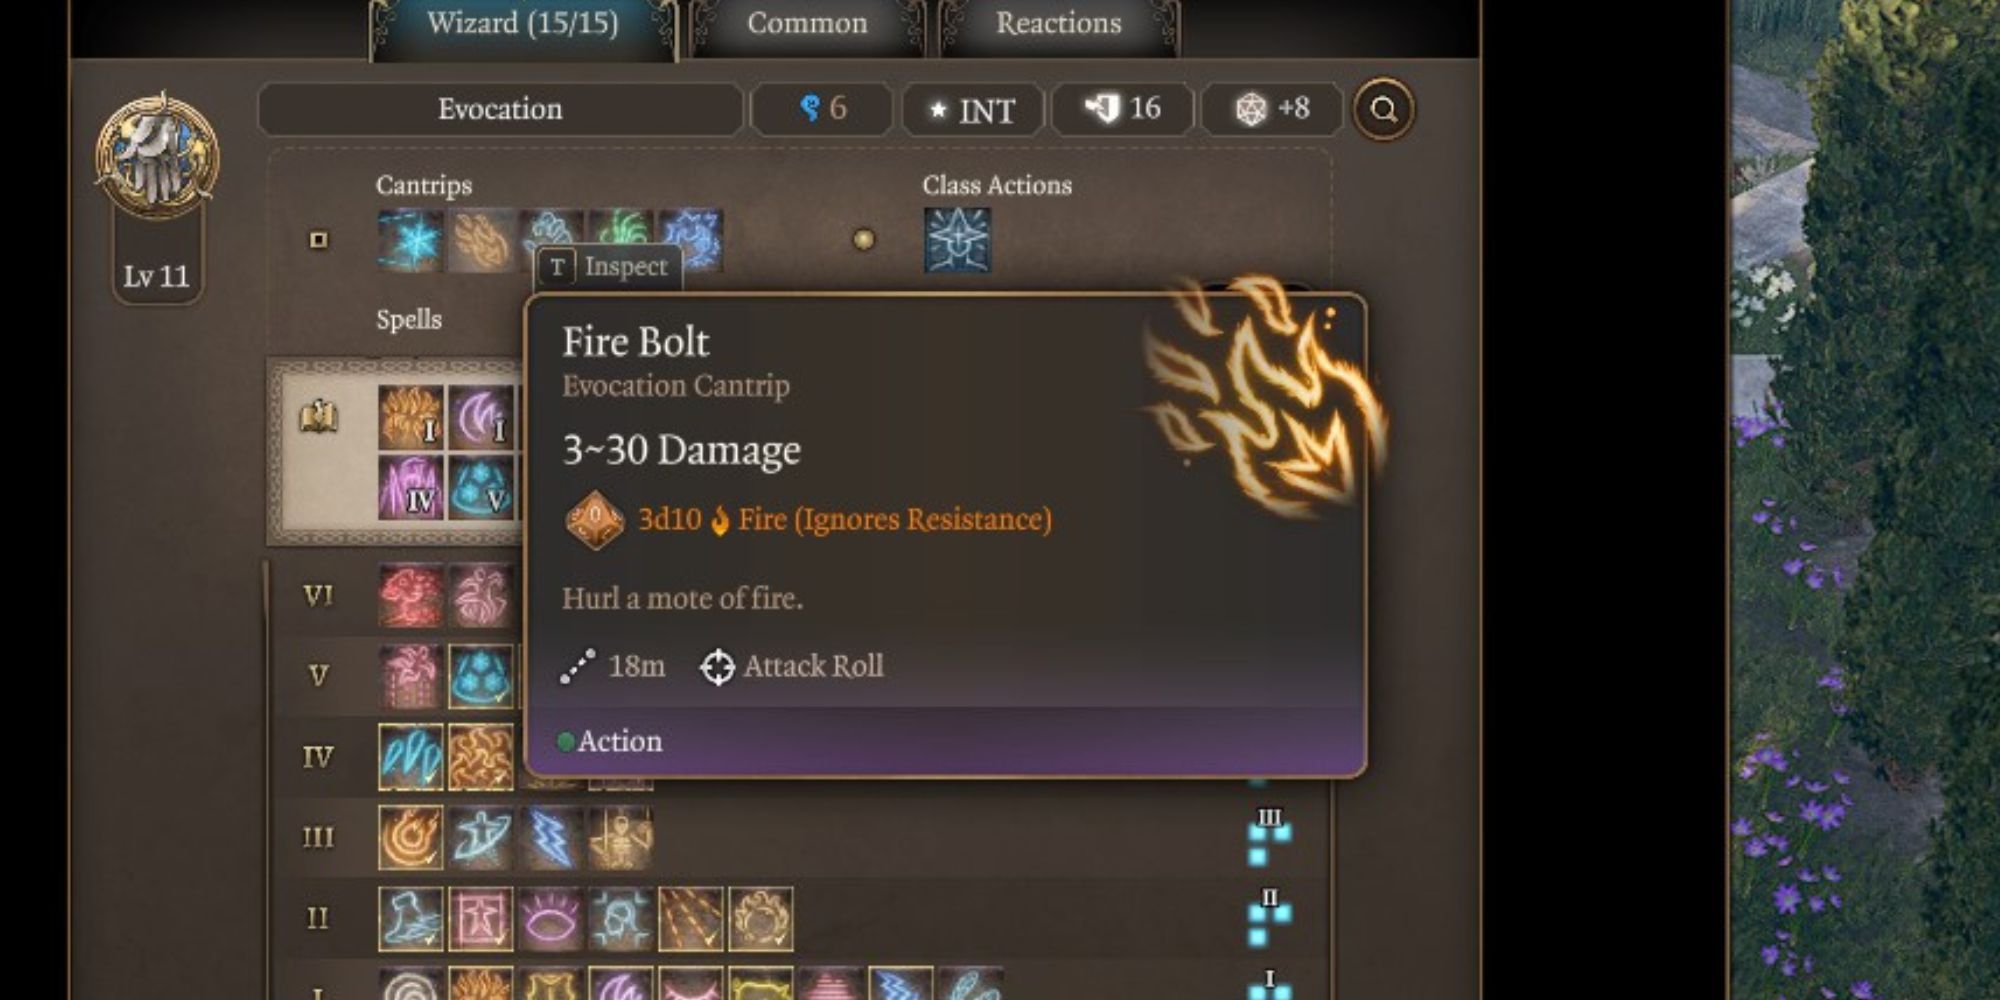 The Fire Bolt cantrip in Baldur’s Gate 3